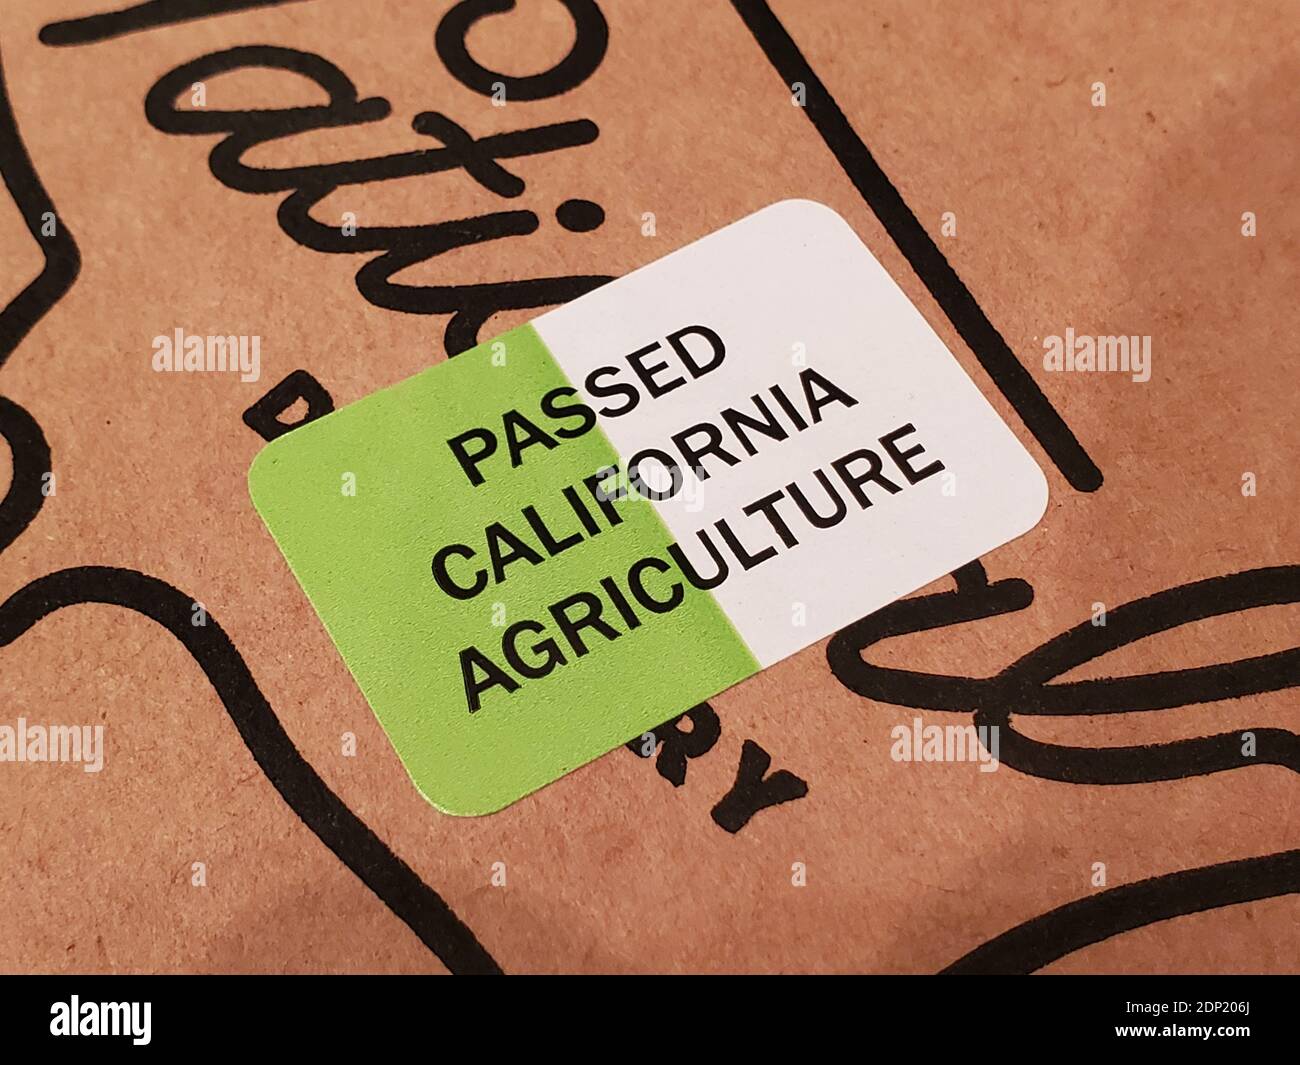 Primo piano di un adesivo verde e bianco con la scritta "Passed California Agriculture" a Lafayette, California, dicembre 2020. () Foto Stock